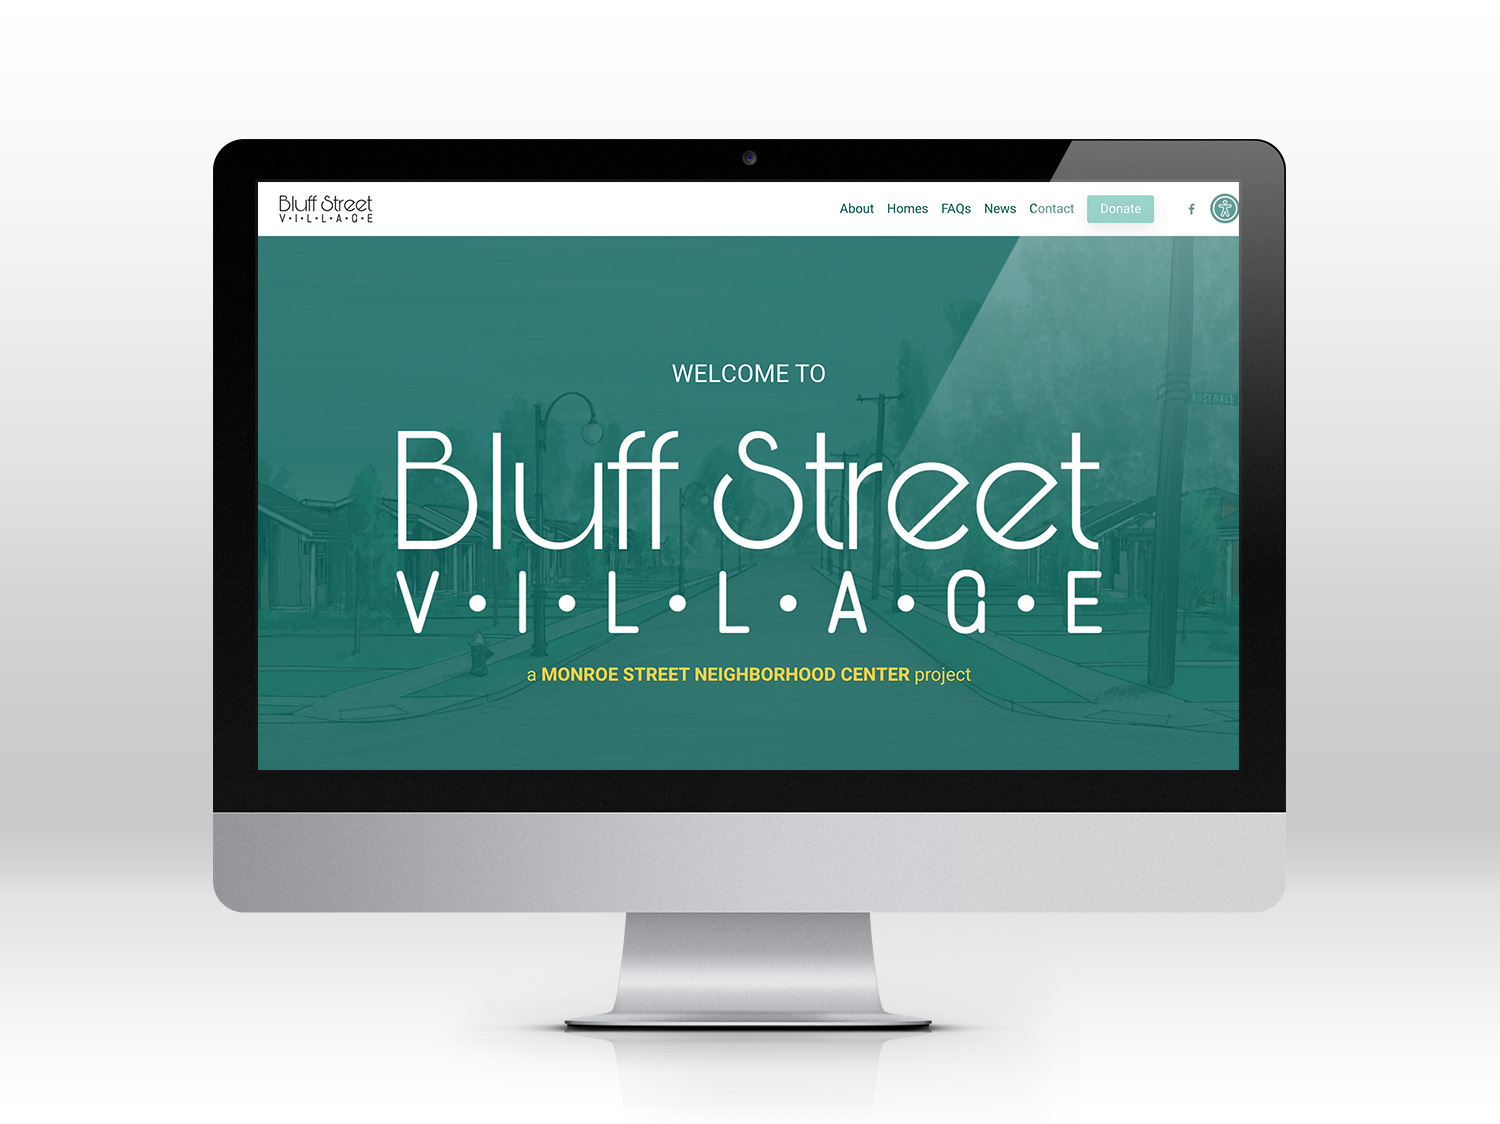 Bluff Street Village